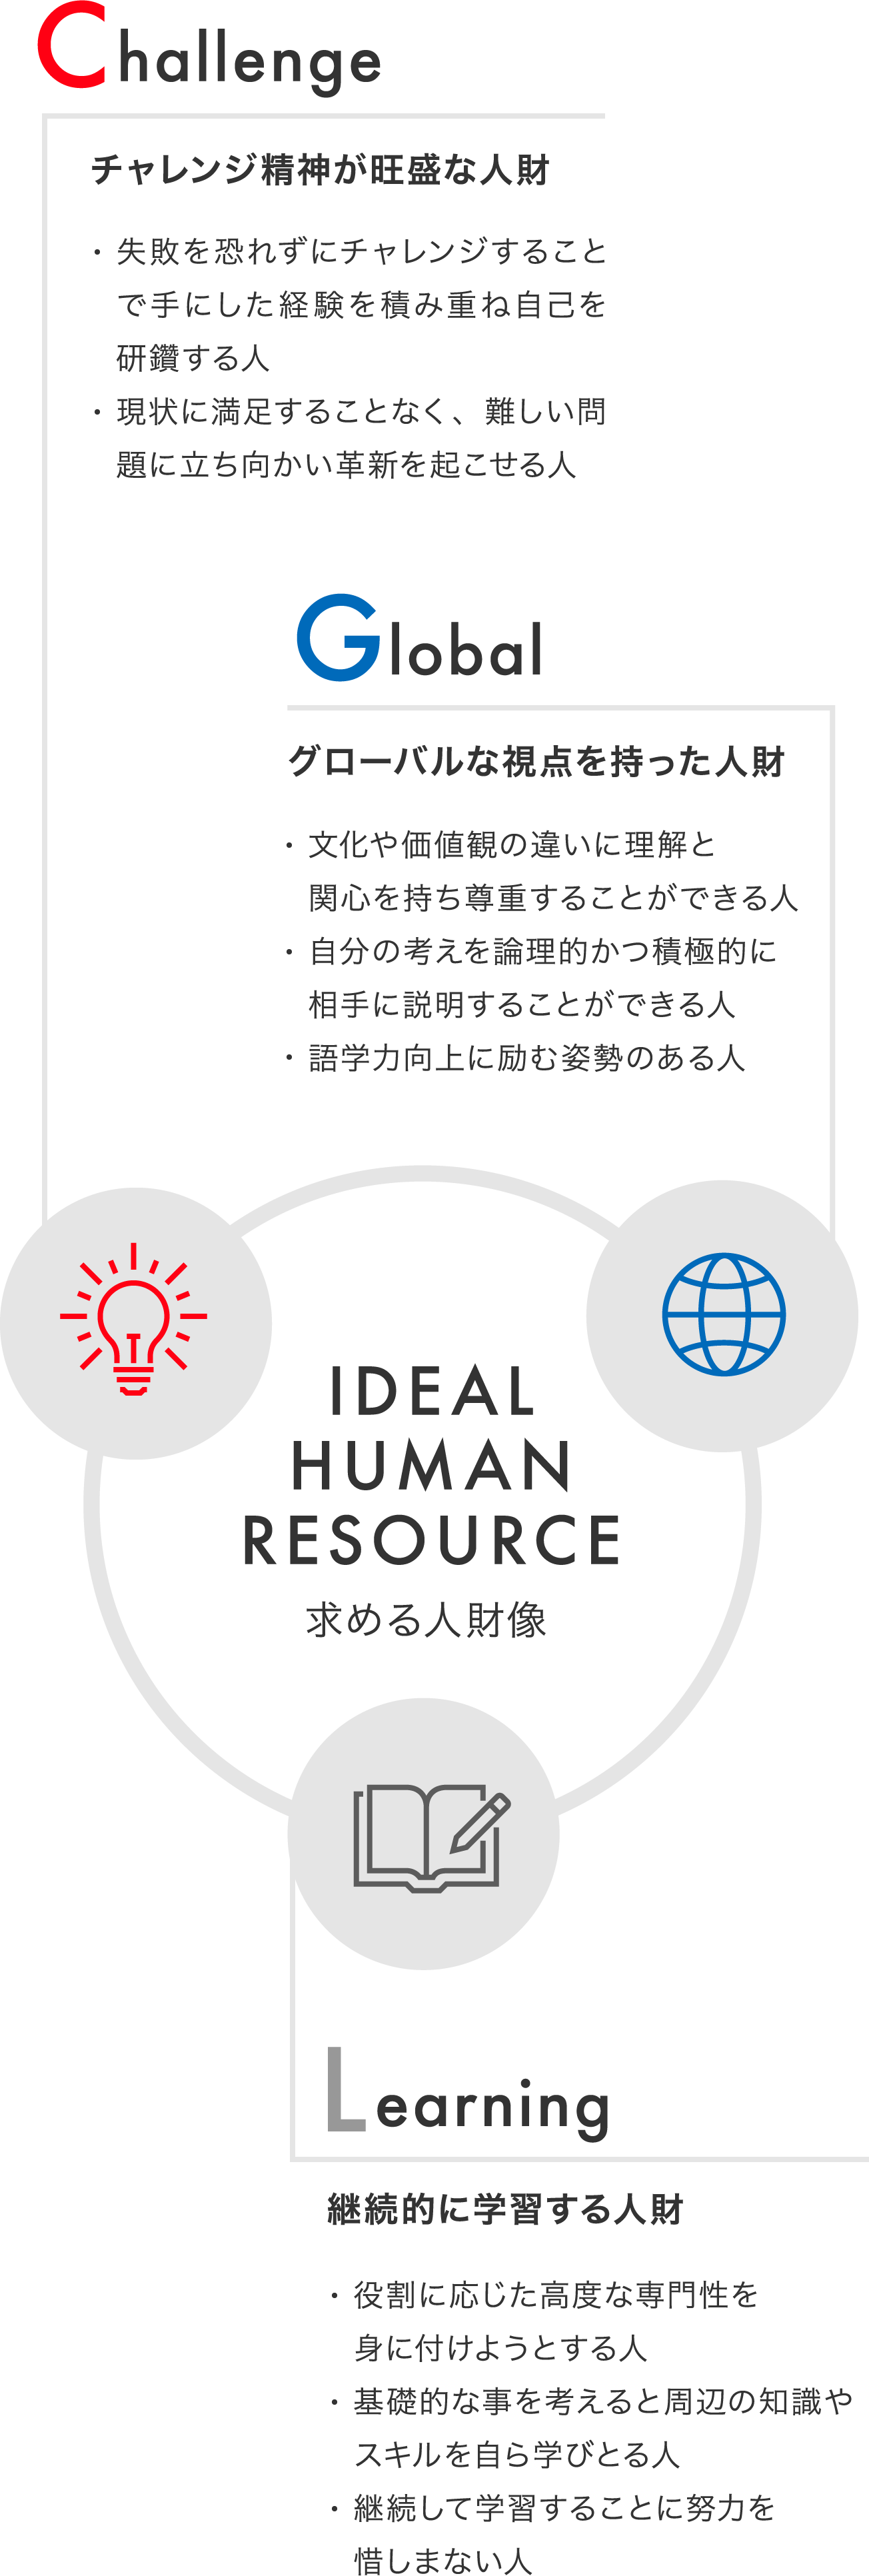 IDEAL HUMAN RESOURCE/求める人財像/Challenge/チャレンジ精神が旺盛な人財/Global/グローバルな視点を持った人財/Learning/継続的に学習する人財